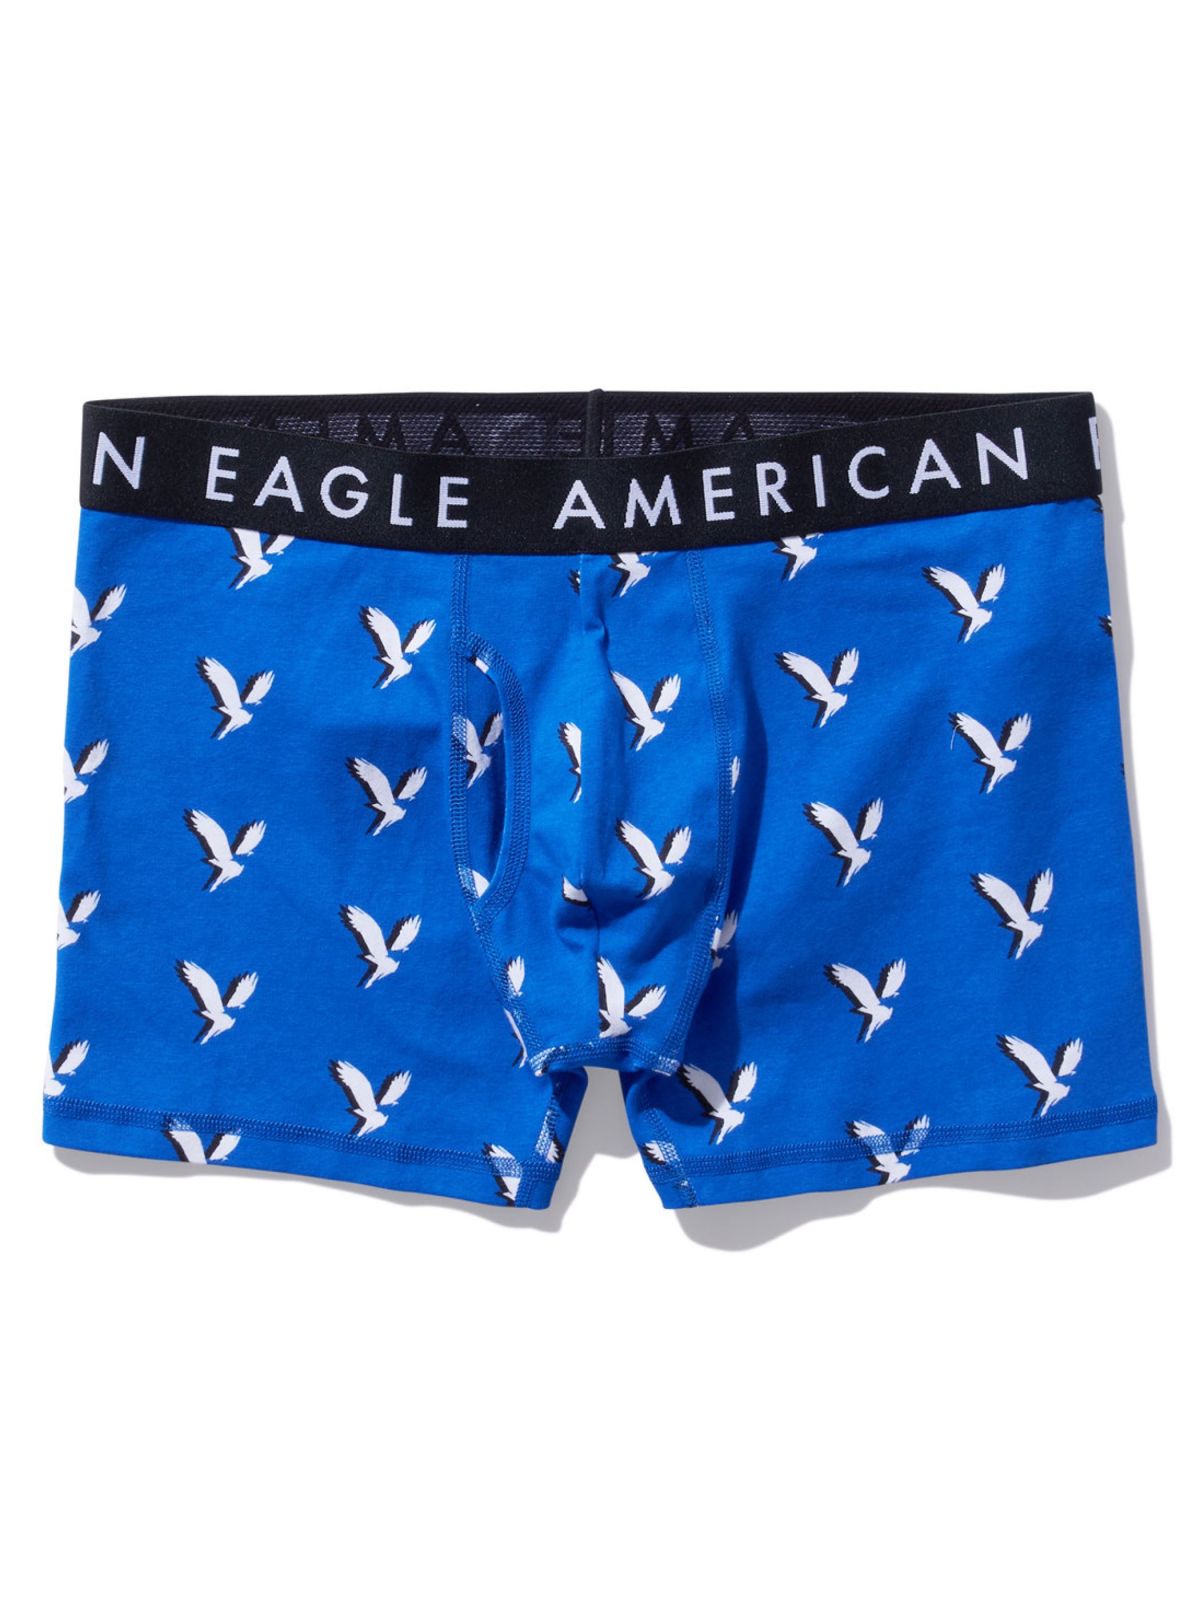  תחתוני בוקסר בהדפס לוגו / גברים של AMERICAN EAGLE